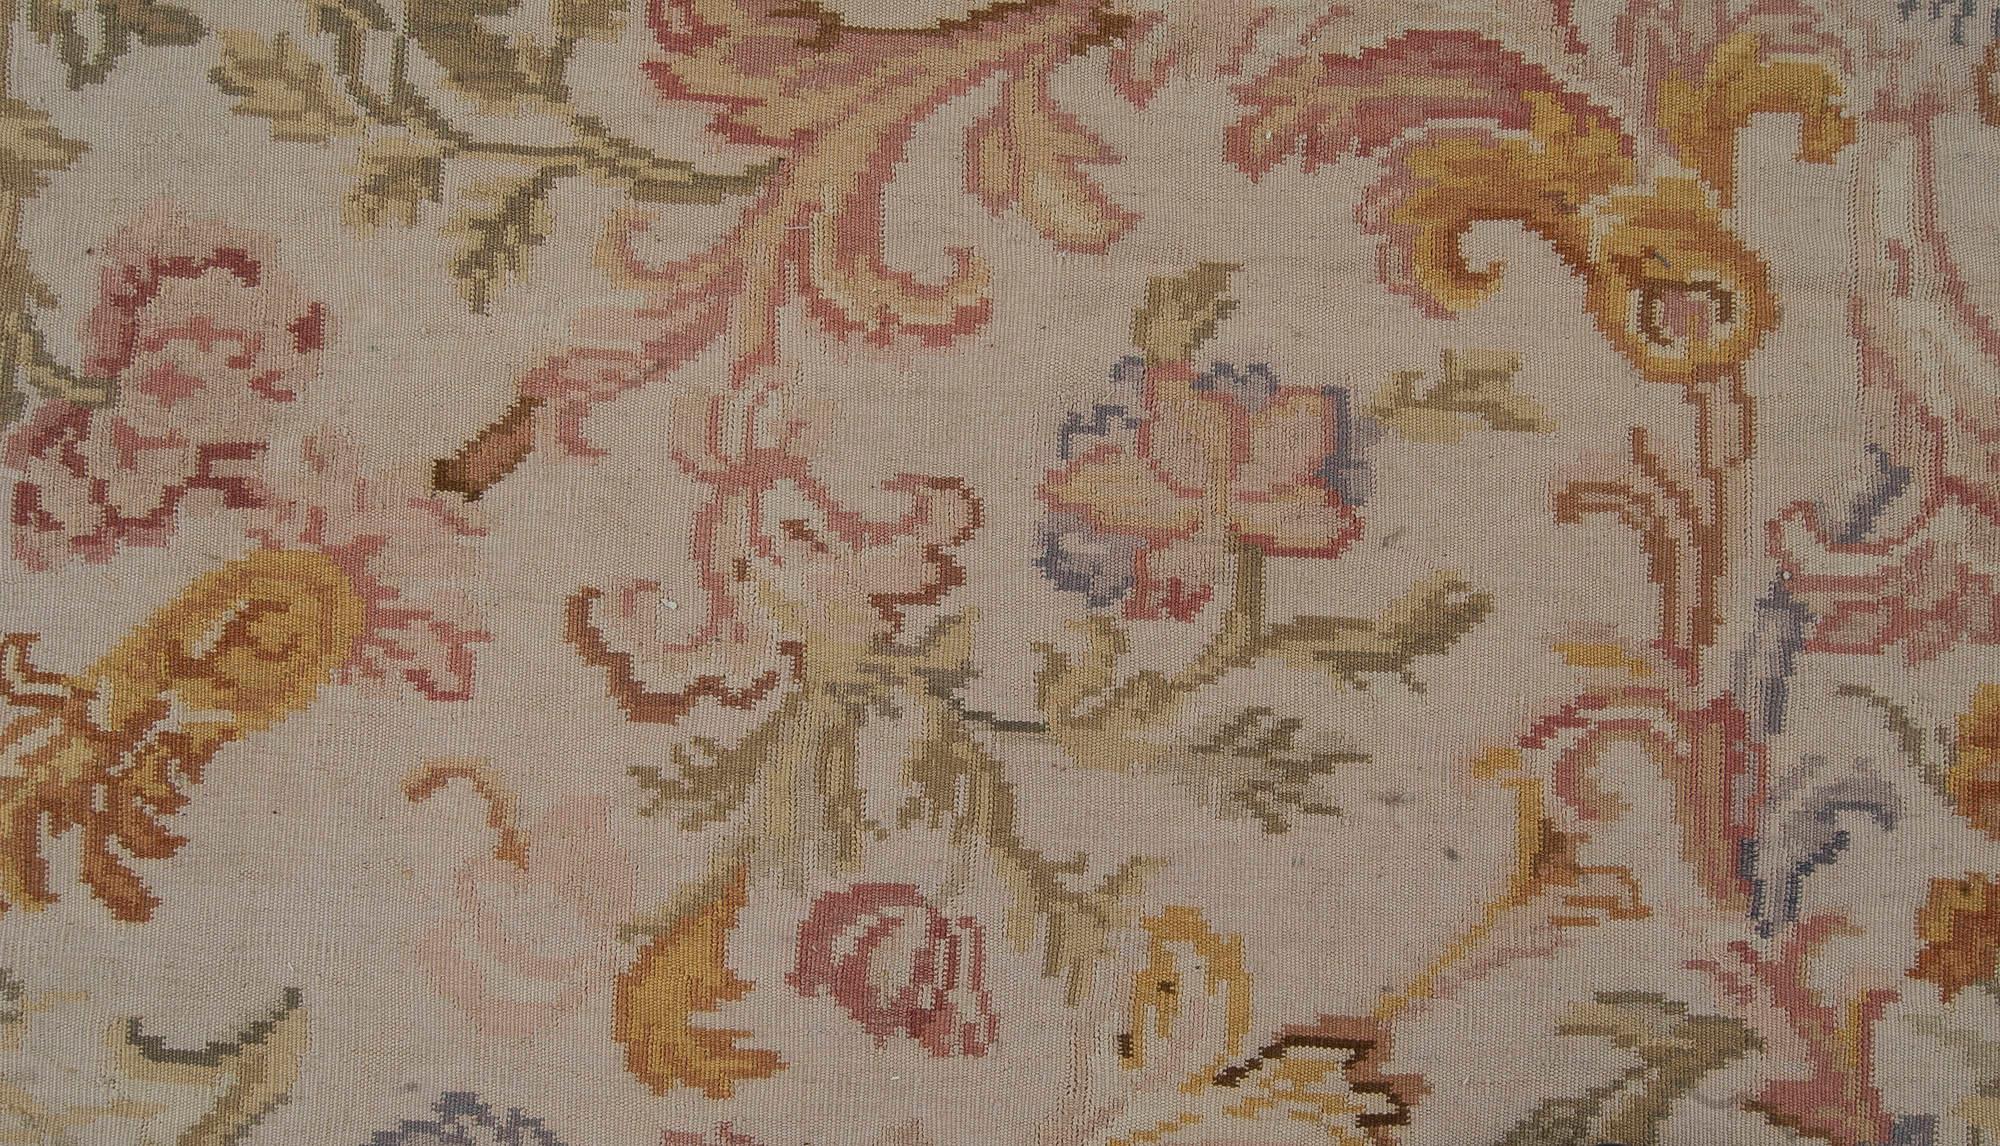 Oversized Bassarabian floral design rug by Doris Leslie Blau.
Size: 14'2